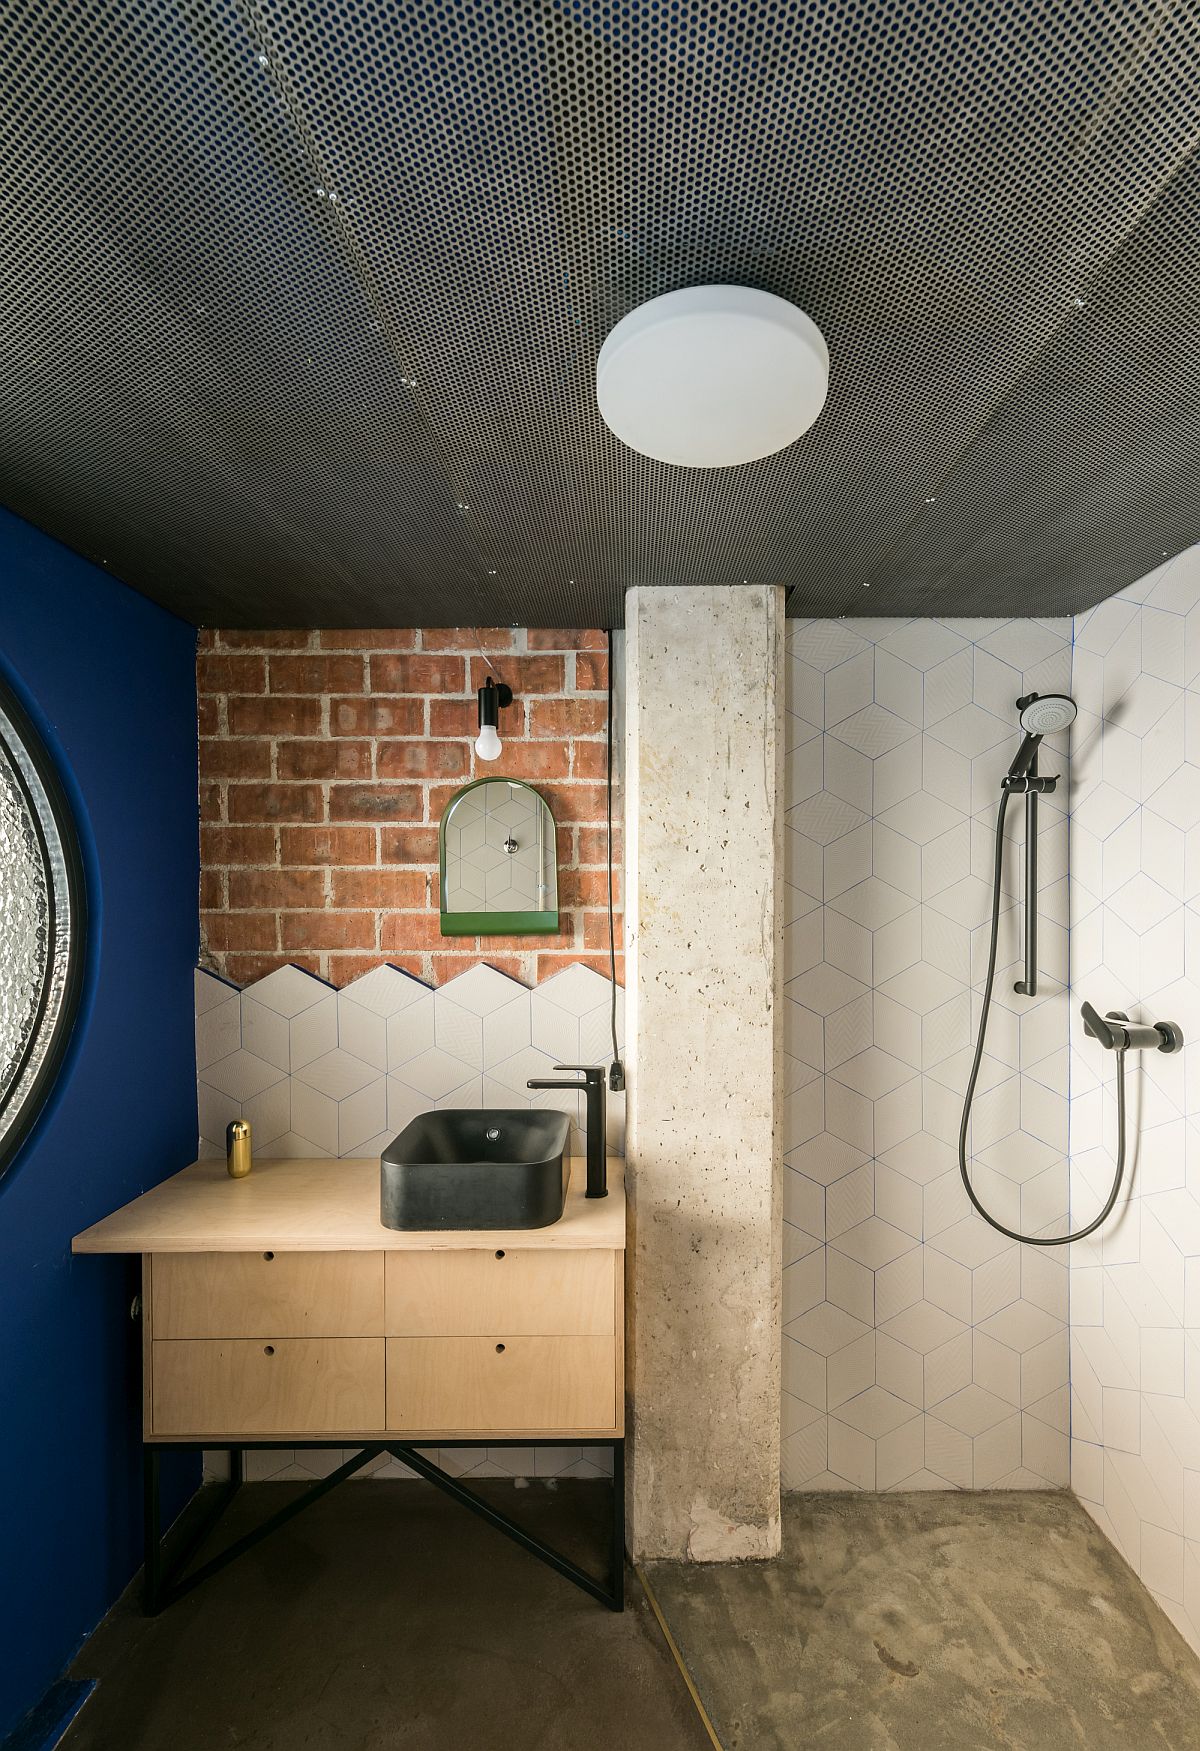 Các yếu tố kim loại, gạch, xi măng, ván ép nhiều họa tiết và kết cấu tương phản, kết hợp cùng bức tường sơn màu xanh lam đậm tạo nên một phòng tắm nhỏ nhưng “có một không hai”.